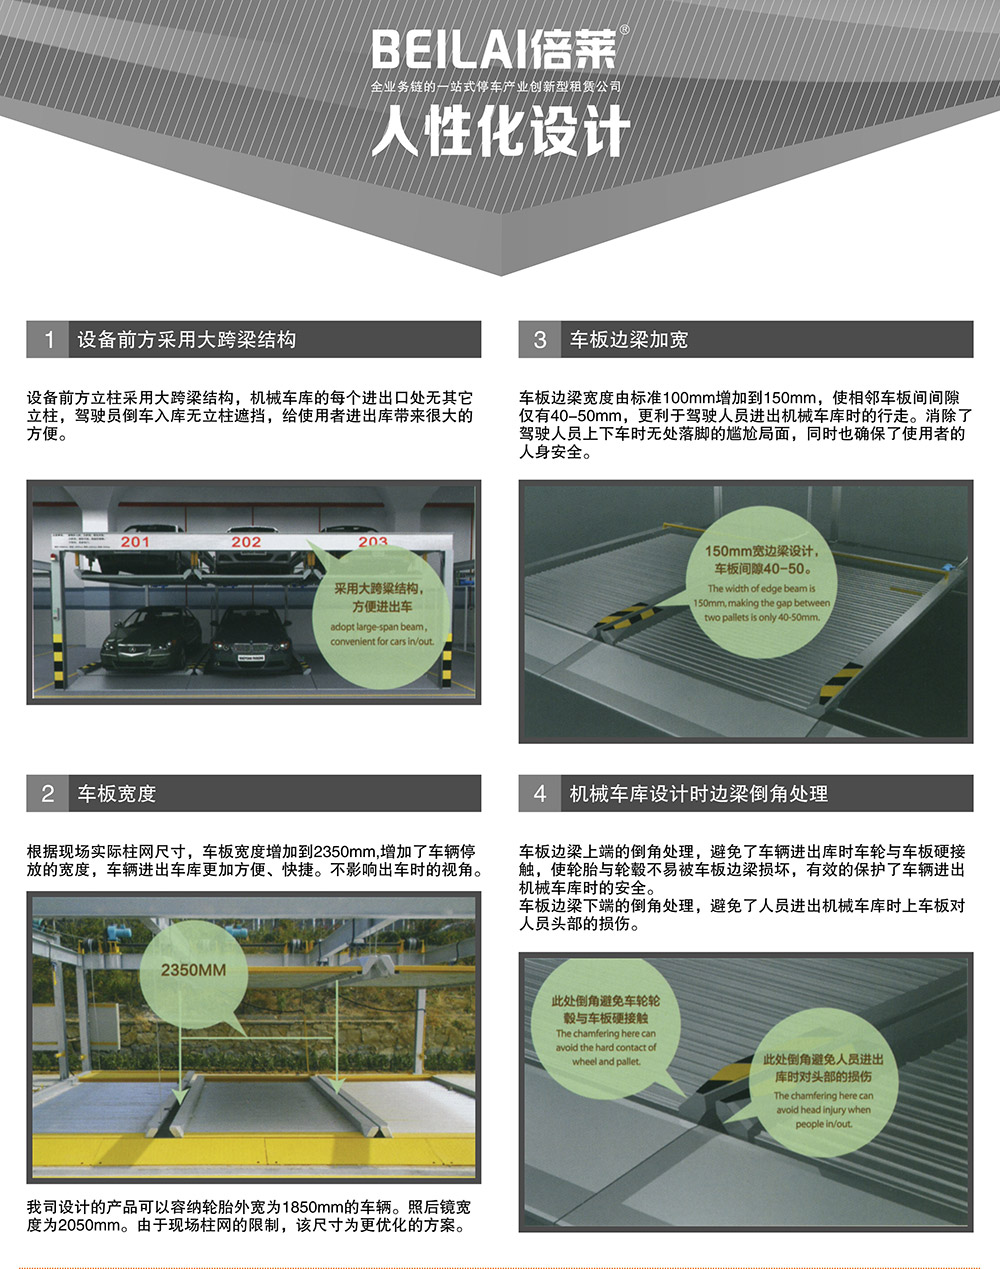 四川成都负一正二地坑PSH3D1三层升降横移立体停车设备人性化设计.jpg